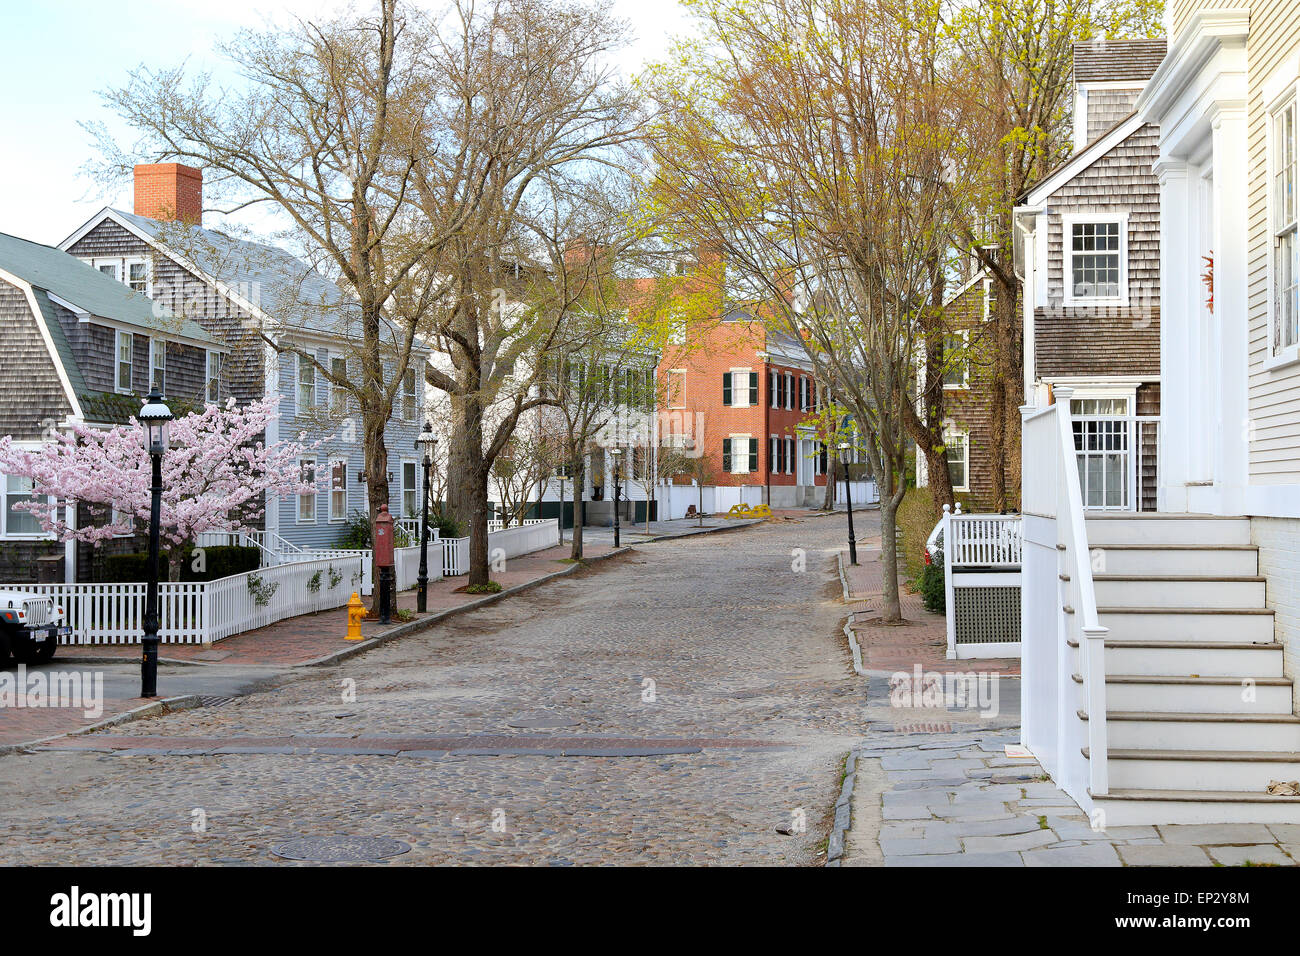 Sur l'île de Nantucket Nantucket Massachusetts. Le centre-ville de scène avec des ruelles pavées, rue pavée et maisons anciennes. Banque D'Images